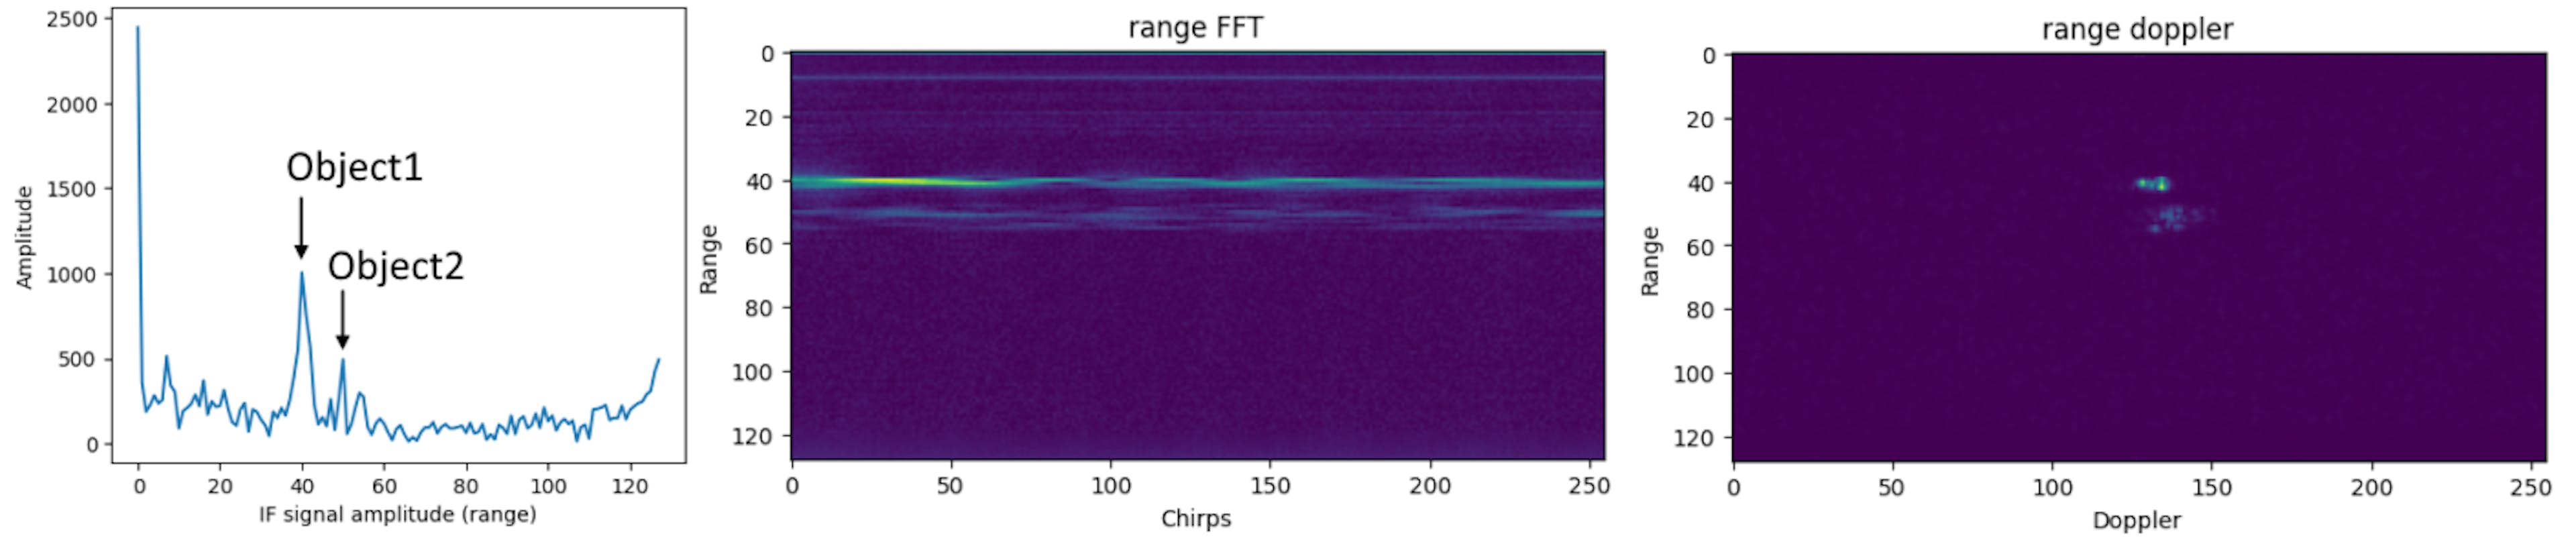 Soldan sağa: Fourier dönüşümünden (menzil Fourier dönüşümü) sonra tek bir cızırtının IF sinyali, menzilden sonra radar çerçevesi Fourier dönüşümü, menzil doppler görüntüsü. Bir aralık doppler görüntüsündeki "piksellerin" değerleri, belirli bir hız ve mesafedeki genlik tepkisi ve fazdır.